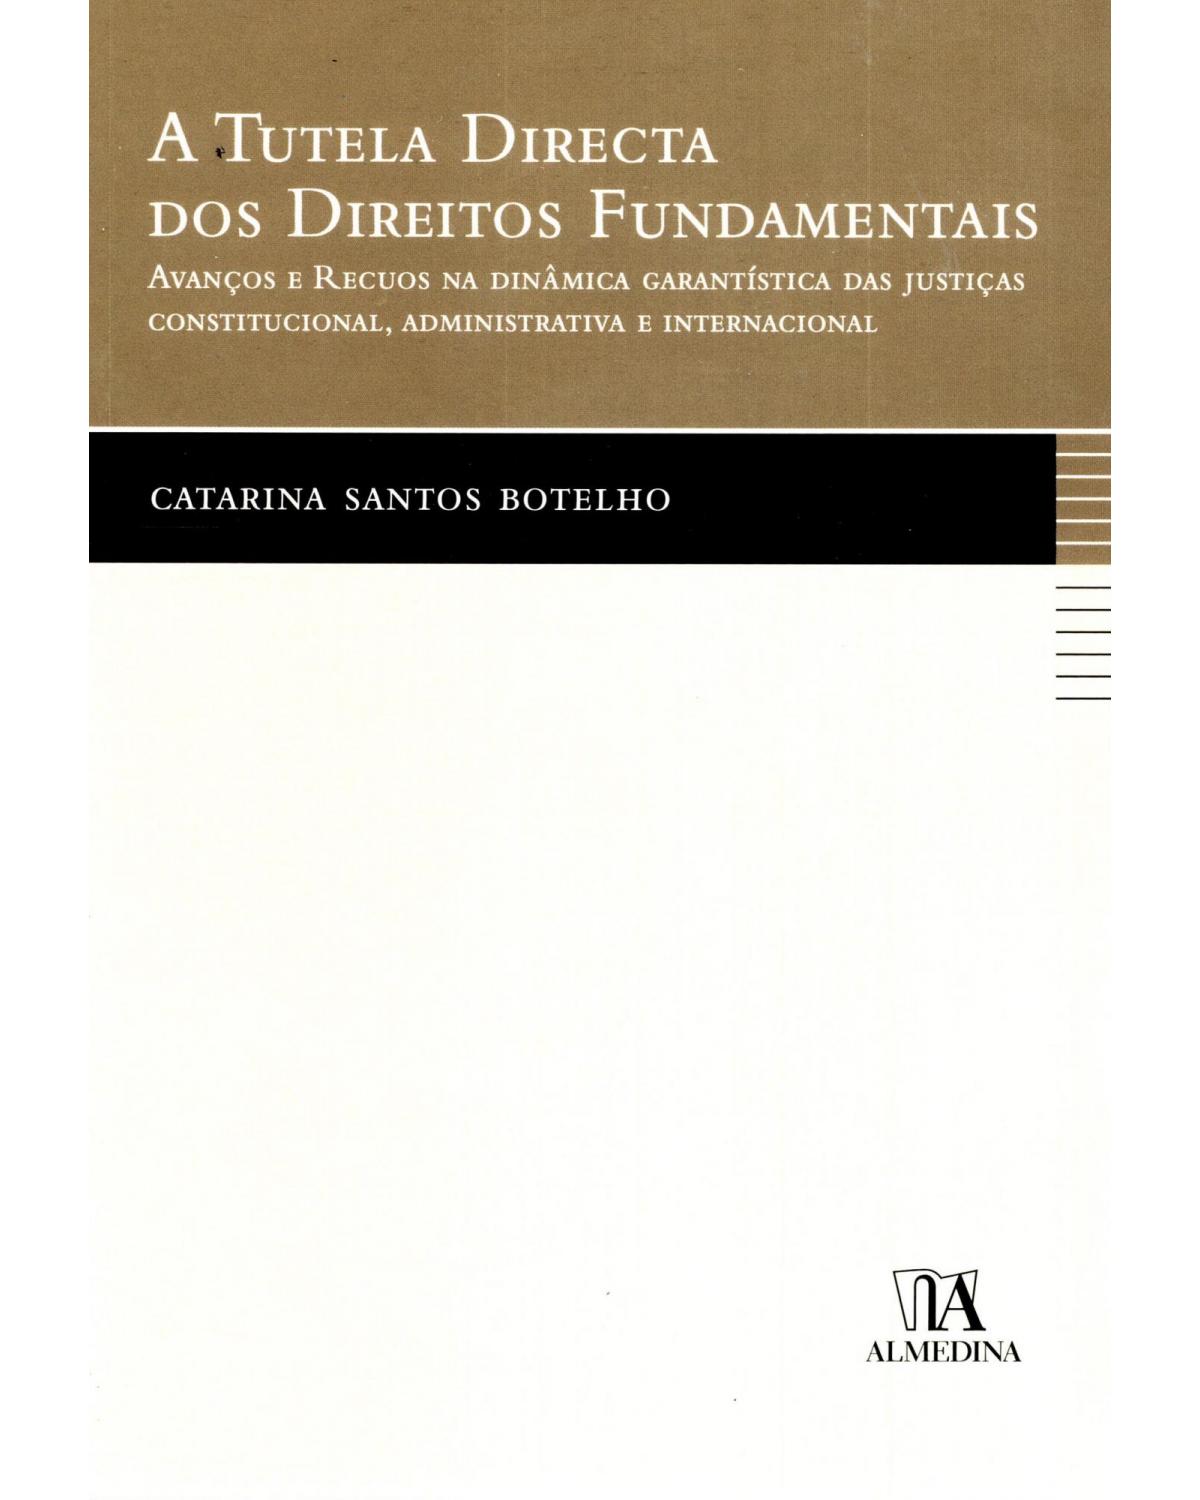 A tutela directa dos direitos fundamentais: avanços e recuos na dinâmica garantística das justiças constitucional, administrativa e internacional - 1ª Edição | 2010